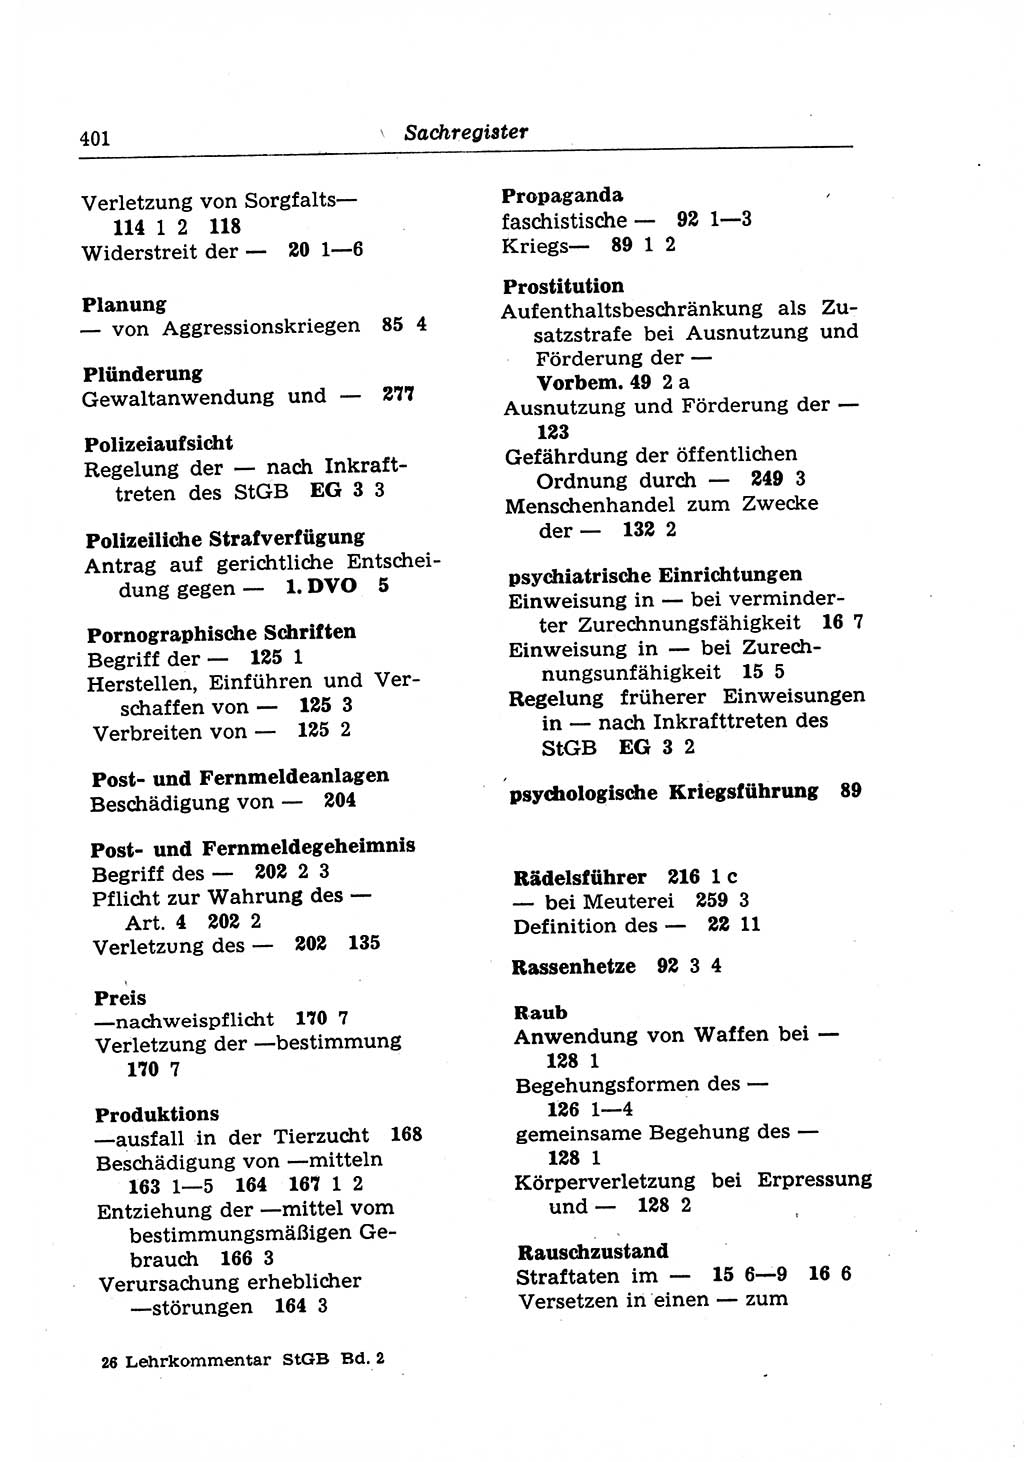 Strafrecht der Deutschen Demokratischen Republik (DDR), Lehrkommentar zum Strafgesetzbuch (StGB), Besonderer Teil 1970, Seite 401 (Strafr. DDR Lehrkomm. StGB BT 1970, S. 401)